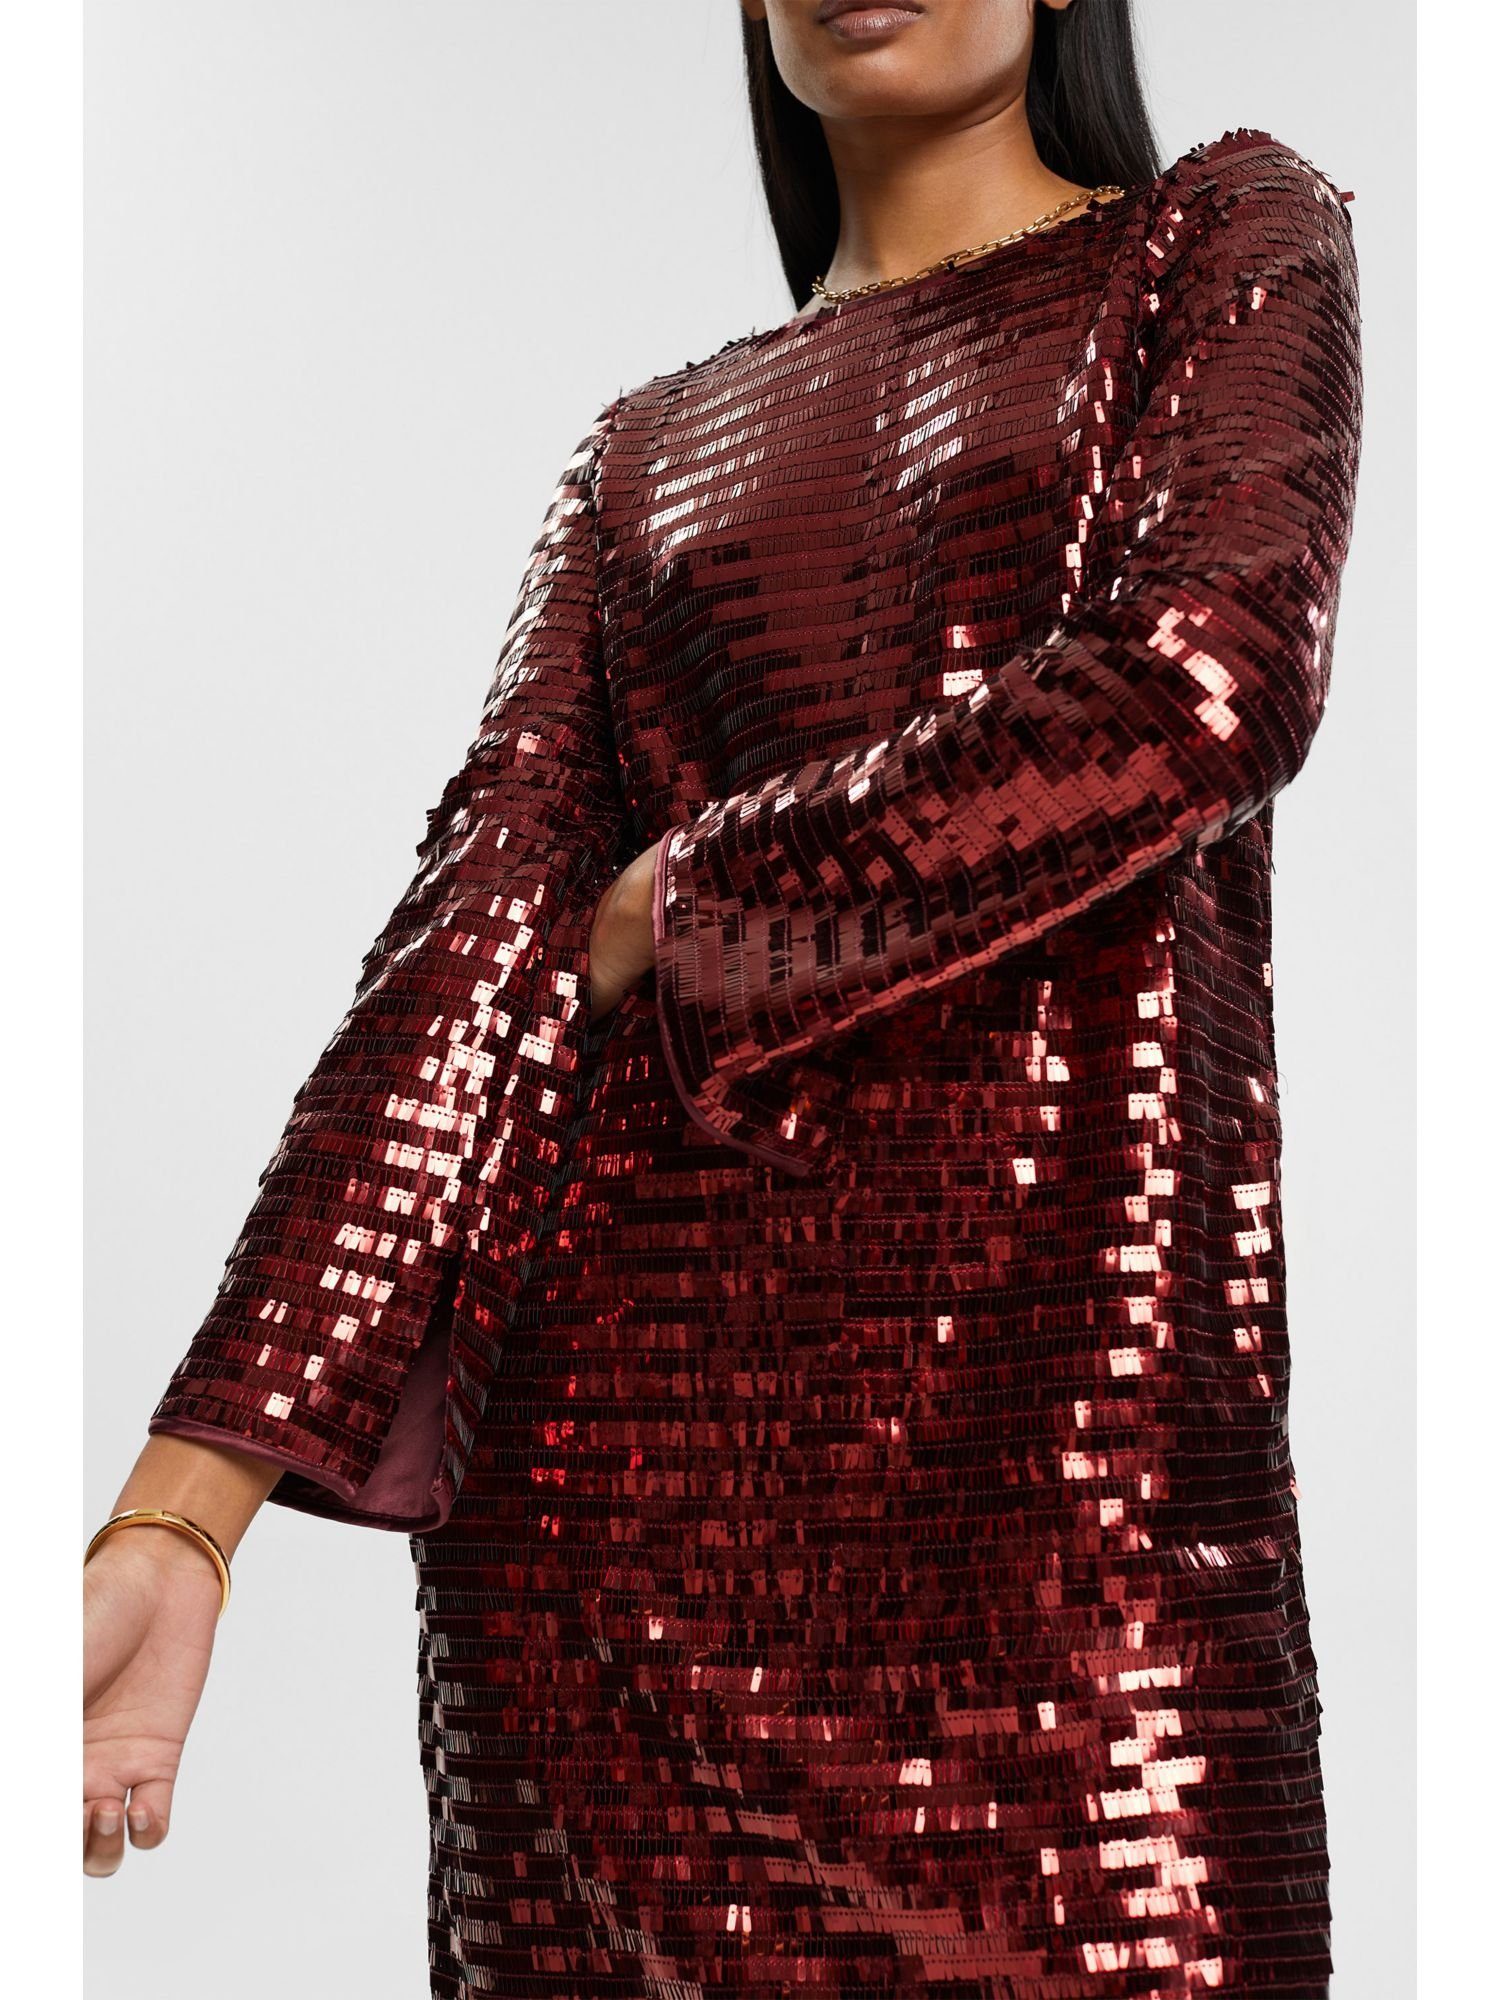 Minikleid RED Kleid Collection Esprit BORDEAUX Pailletten mit